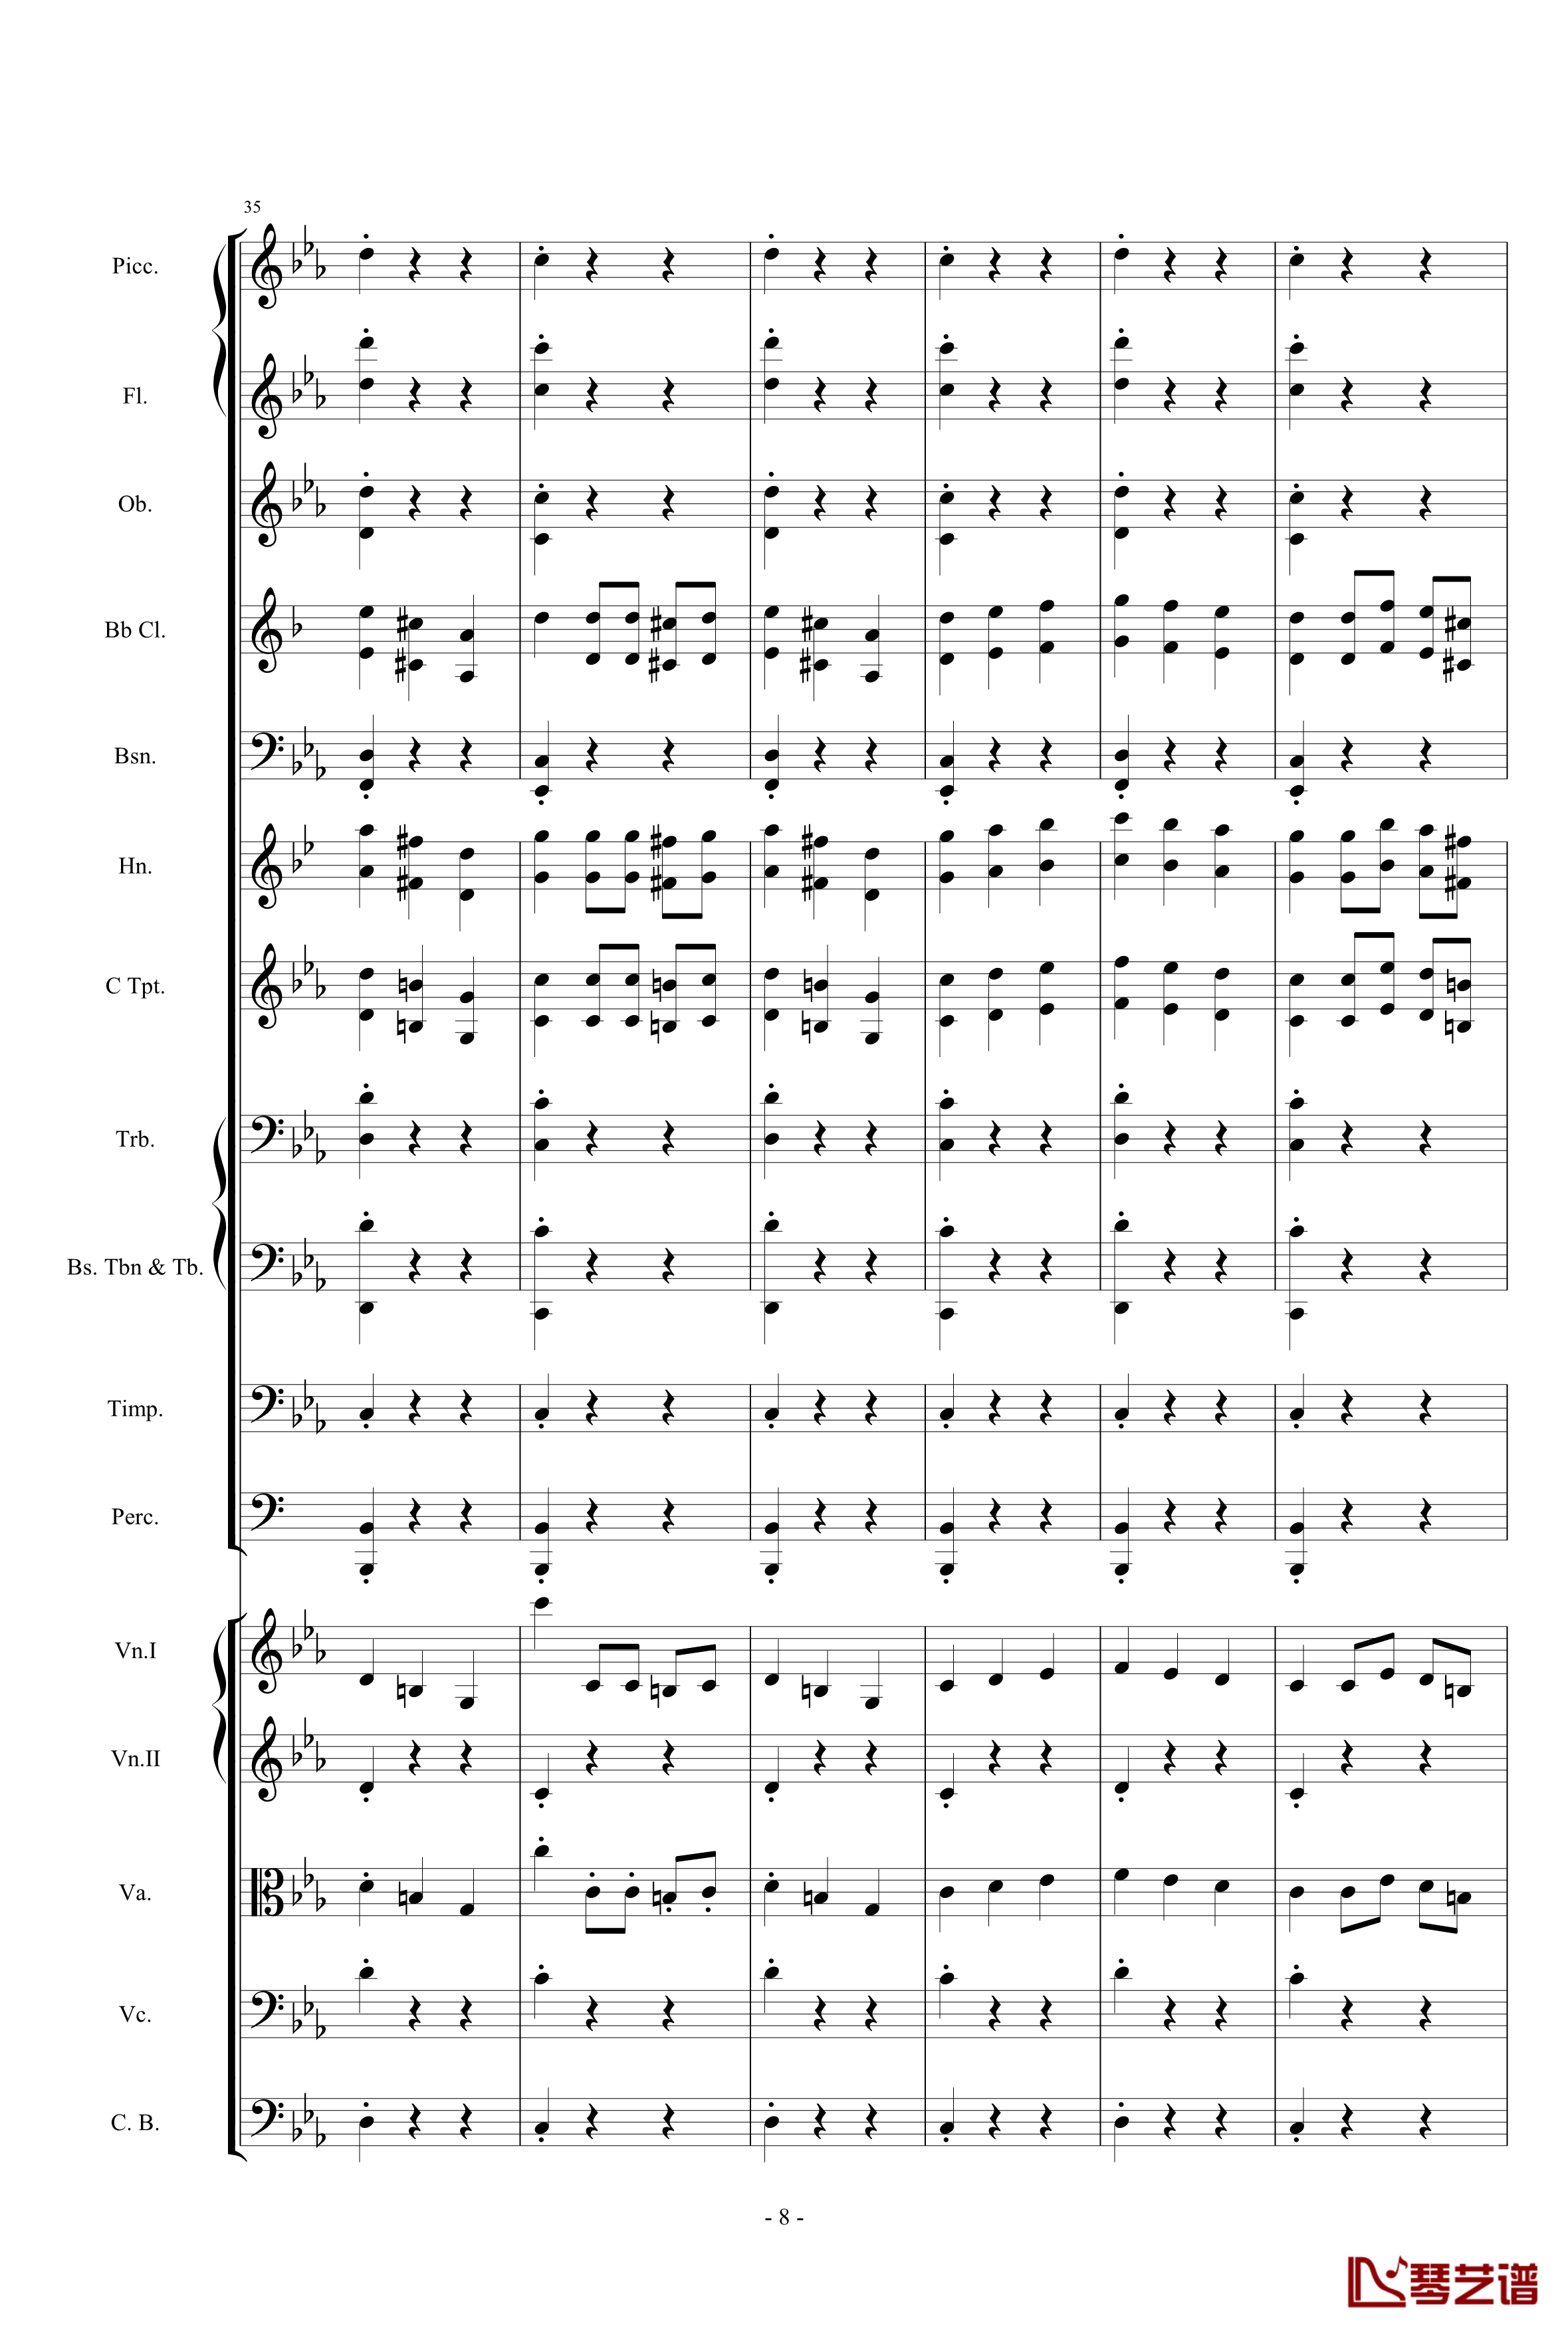 愤怒的小鸟交响曲第三乐章Op.5 no.3钢琴谱-105725788